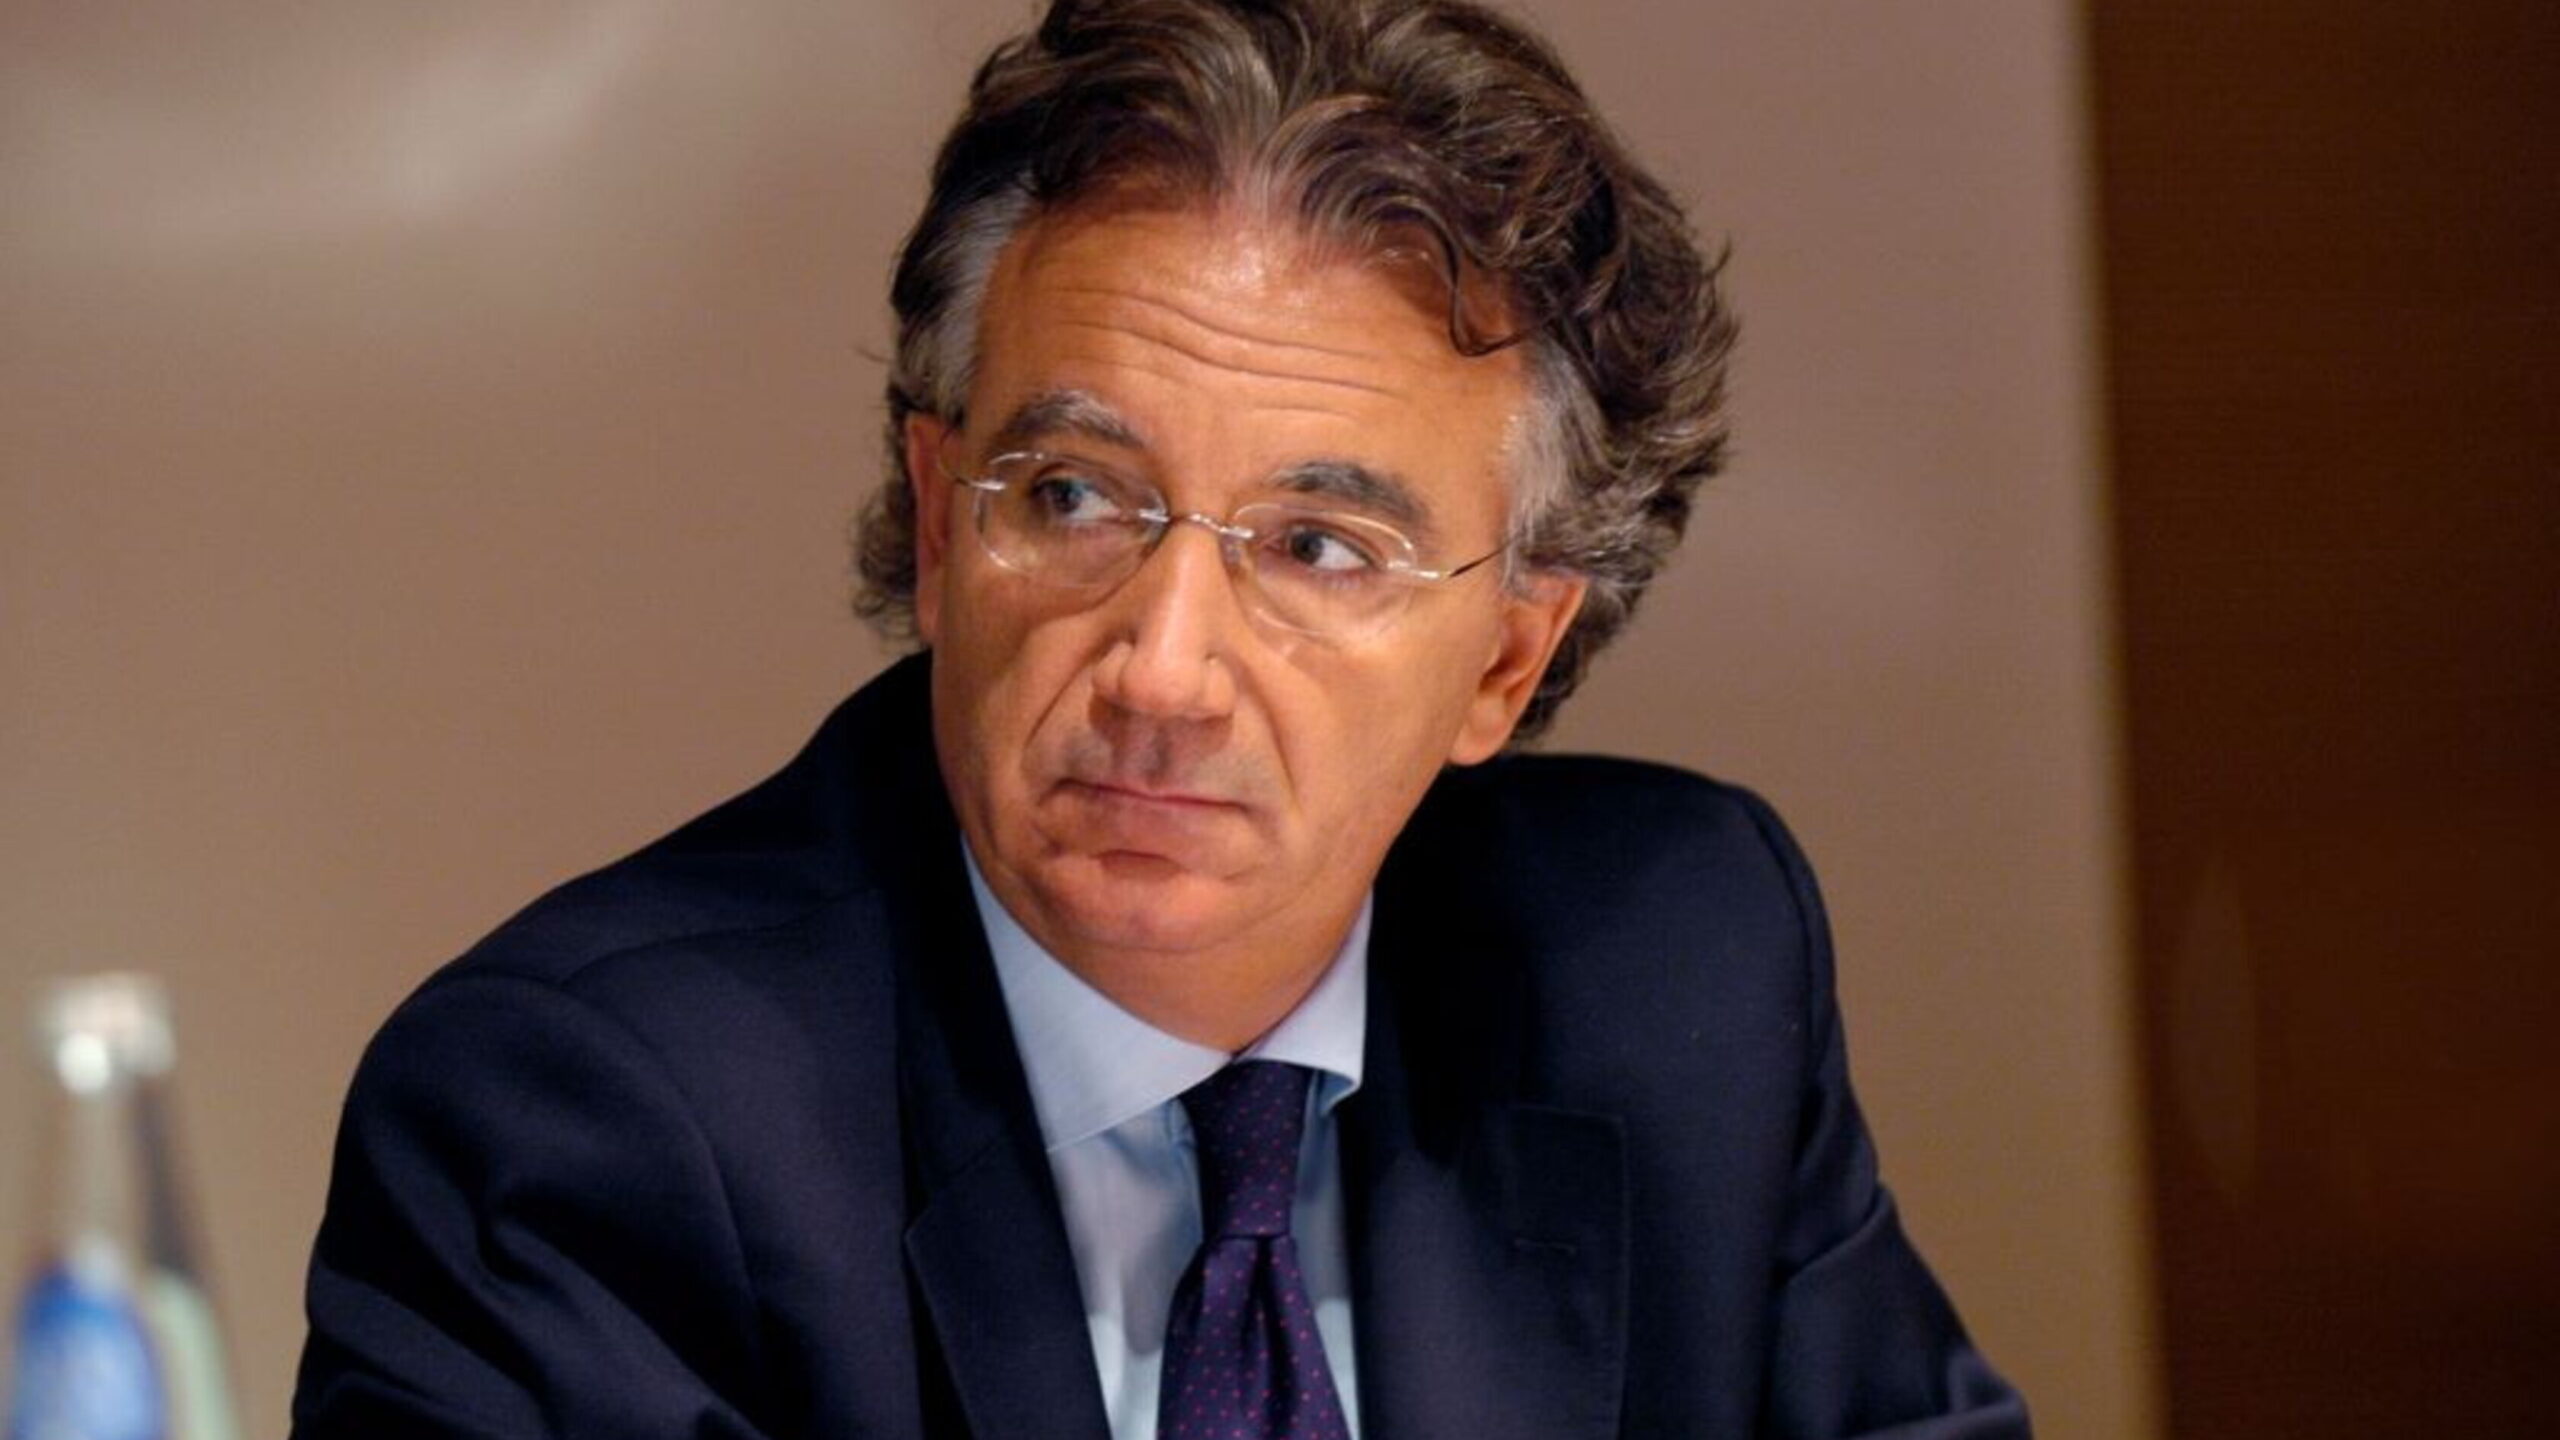 Il presidente del tribunale di Milano: "I test sono irrazionali"